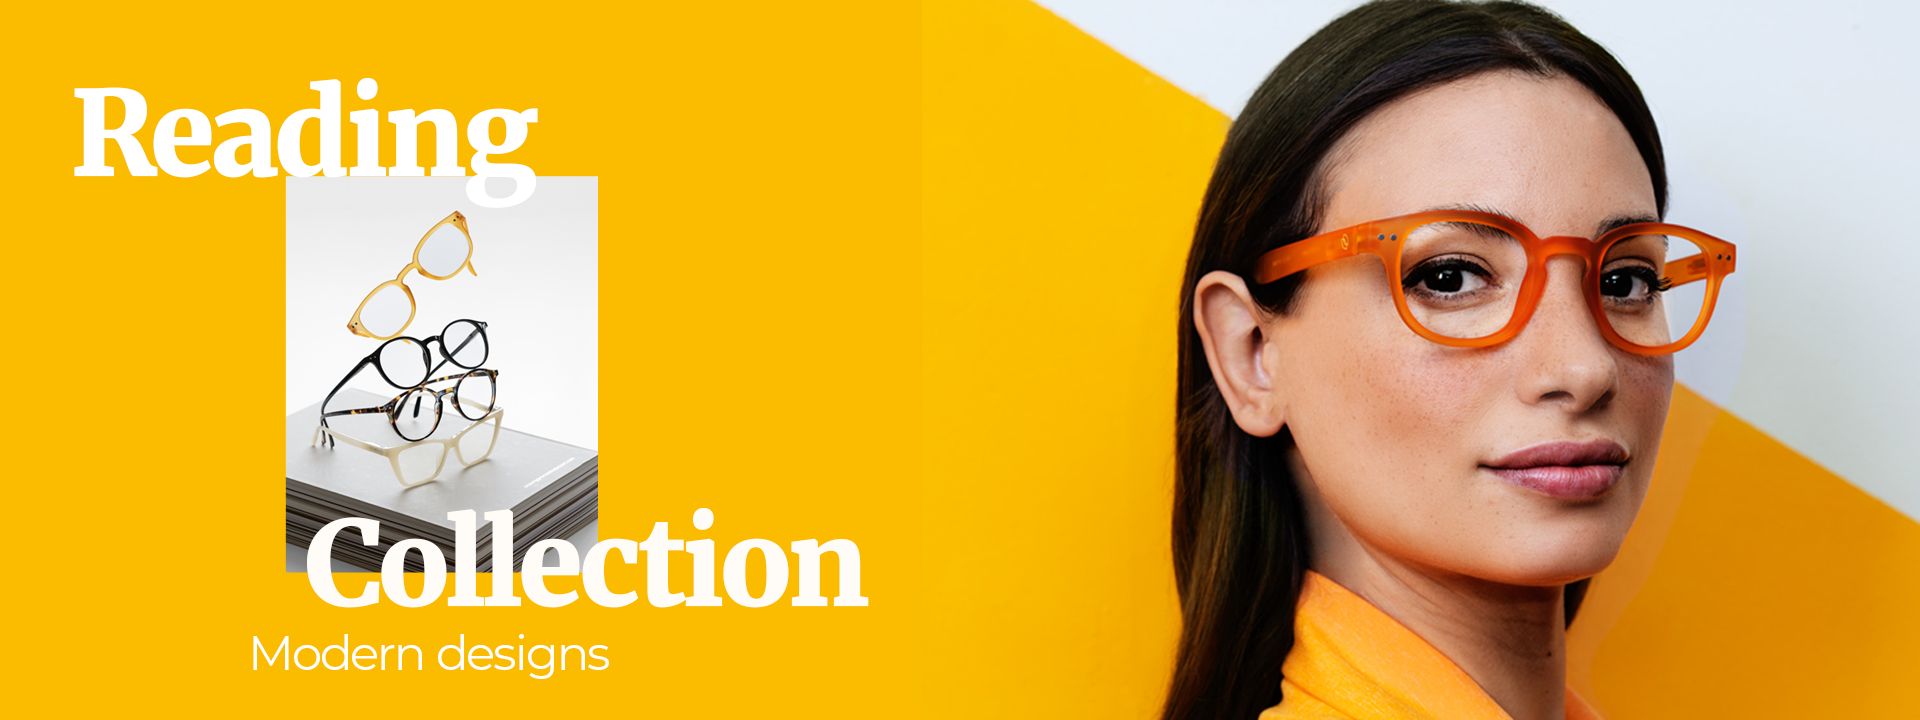 Gafas Perspektive H 1.5: La solución perfecta para una visión clara y  nítida - Farmacia Chamberí